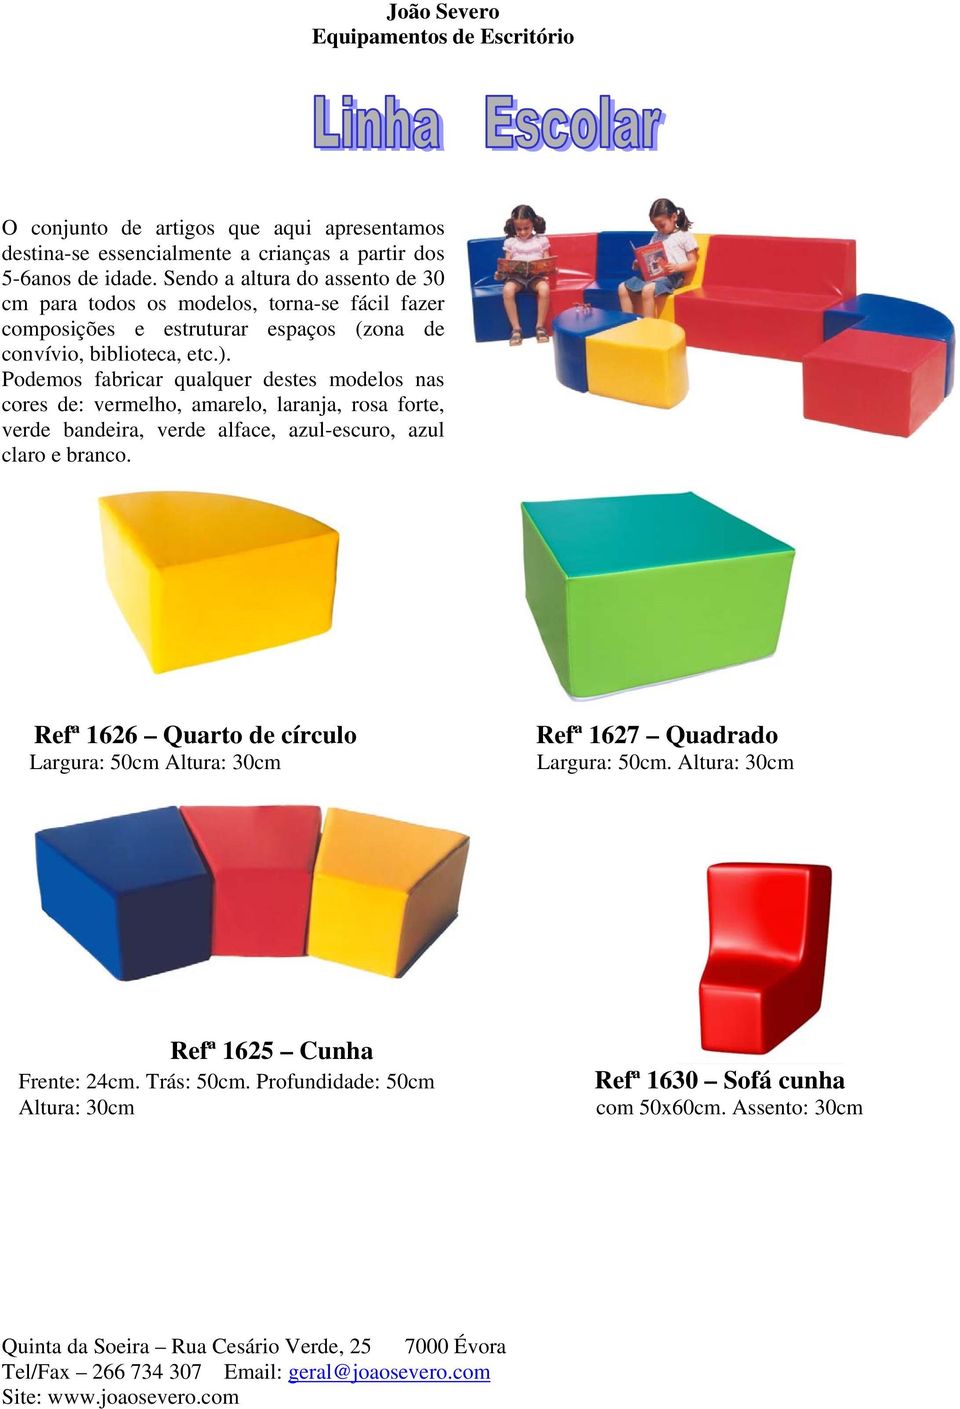 Podemos fabricar qualquer destes modelos nas cores de: vermelho, amarelo, laranja, rosa forte, verde bandeira, verde alface, azul-escuro, azul claro e branco.